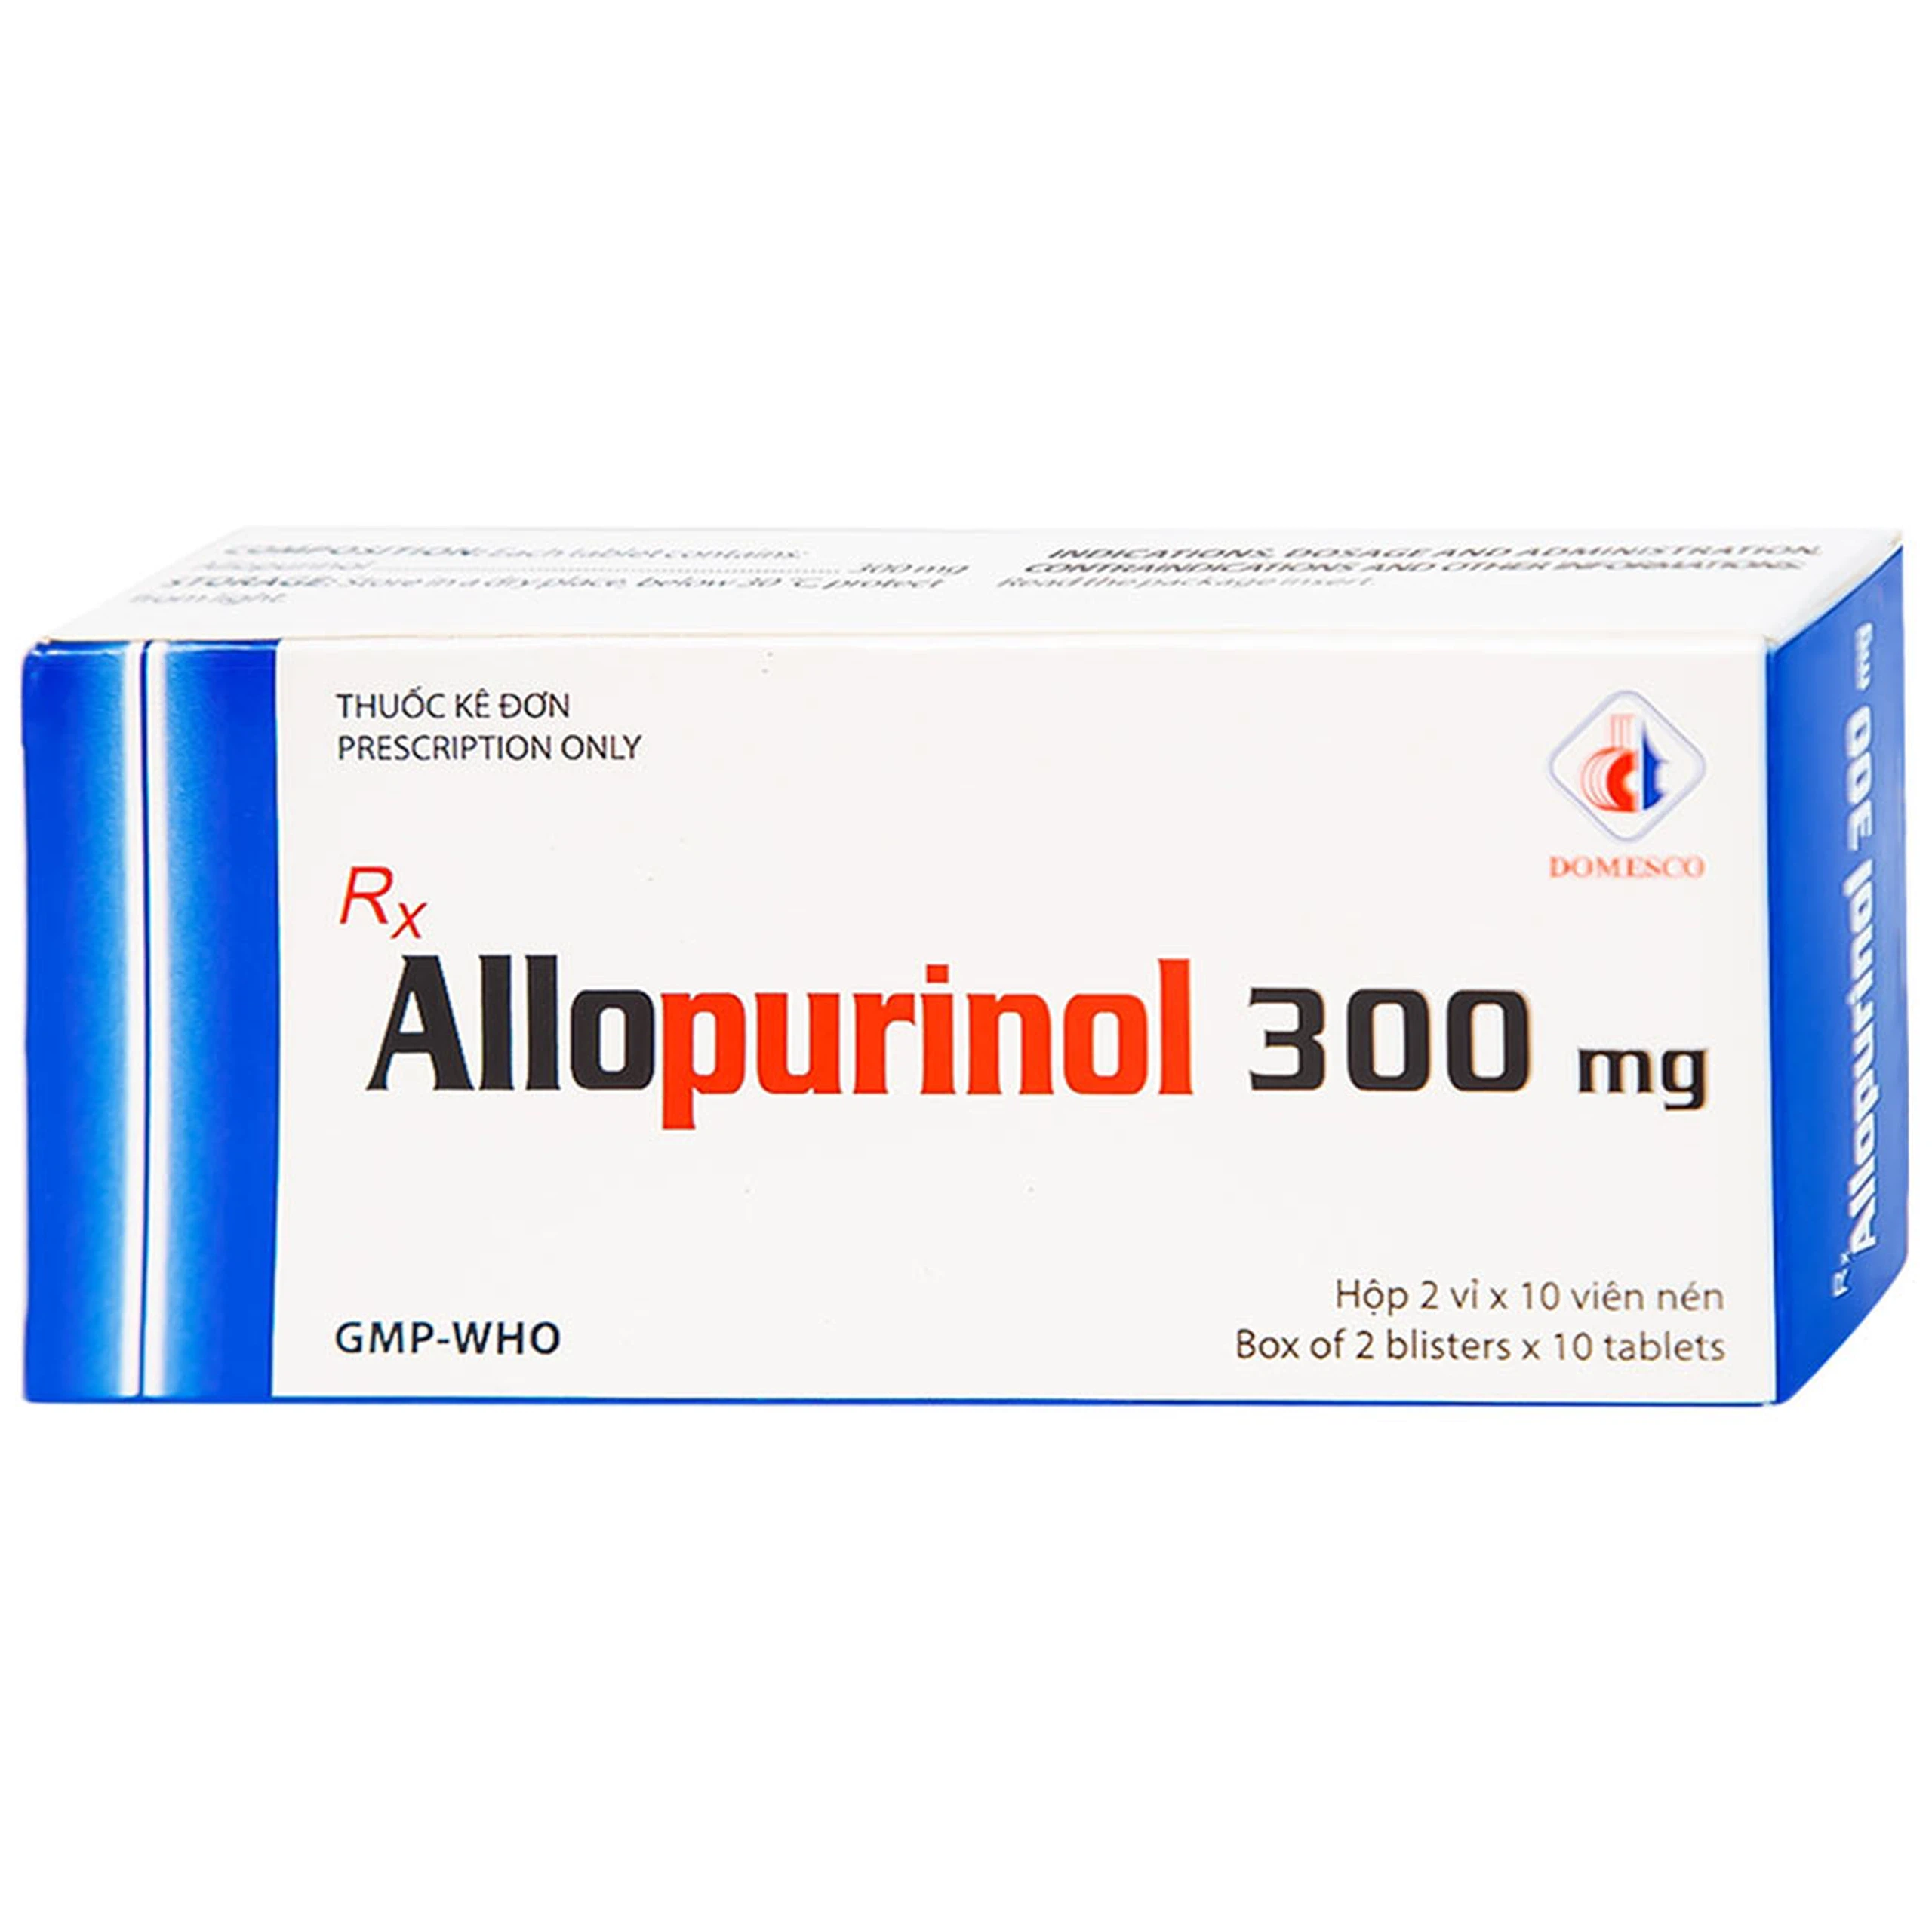 Thuốc Allopurinol 300mg Domesco điều trị tăng acid uric máu, sỏi thận (2 vỉ x 10 viên)